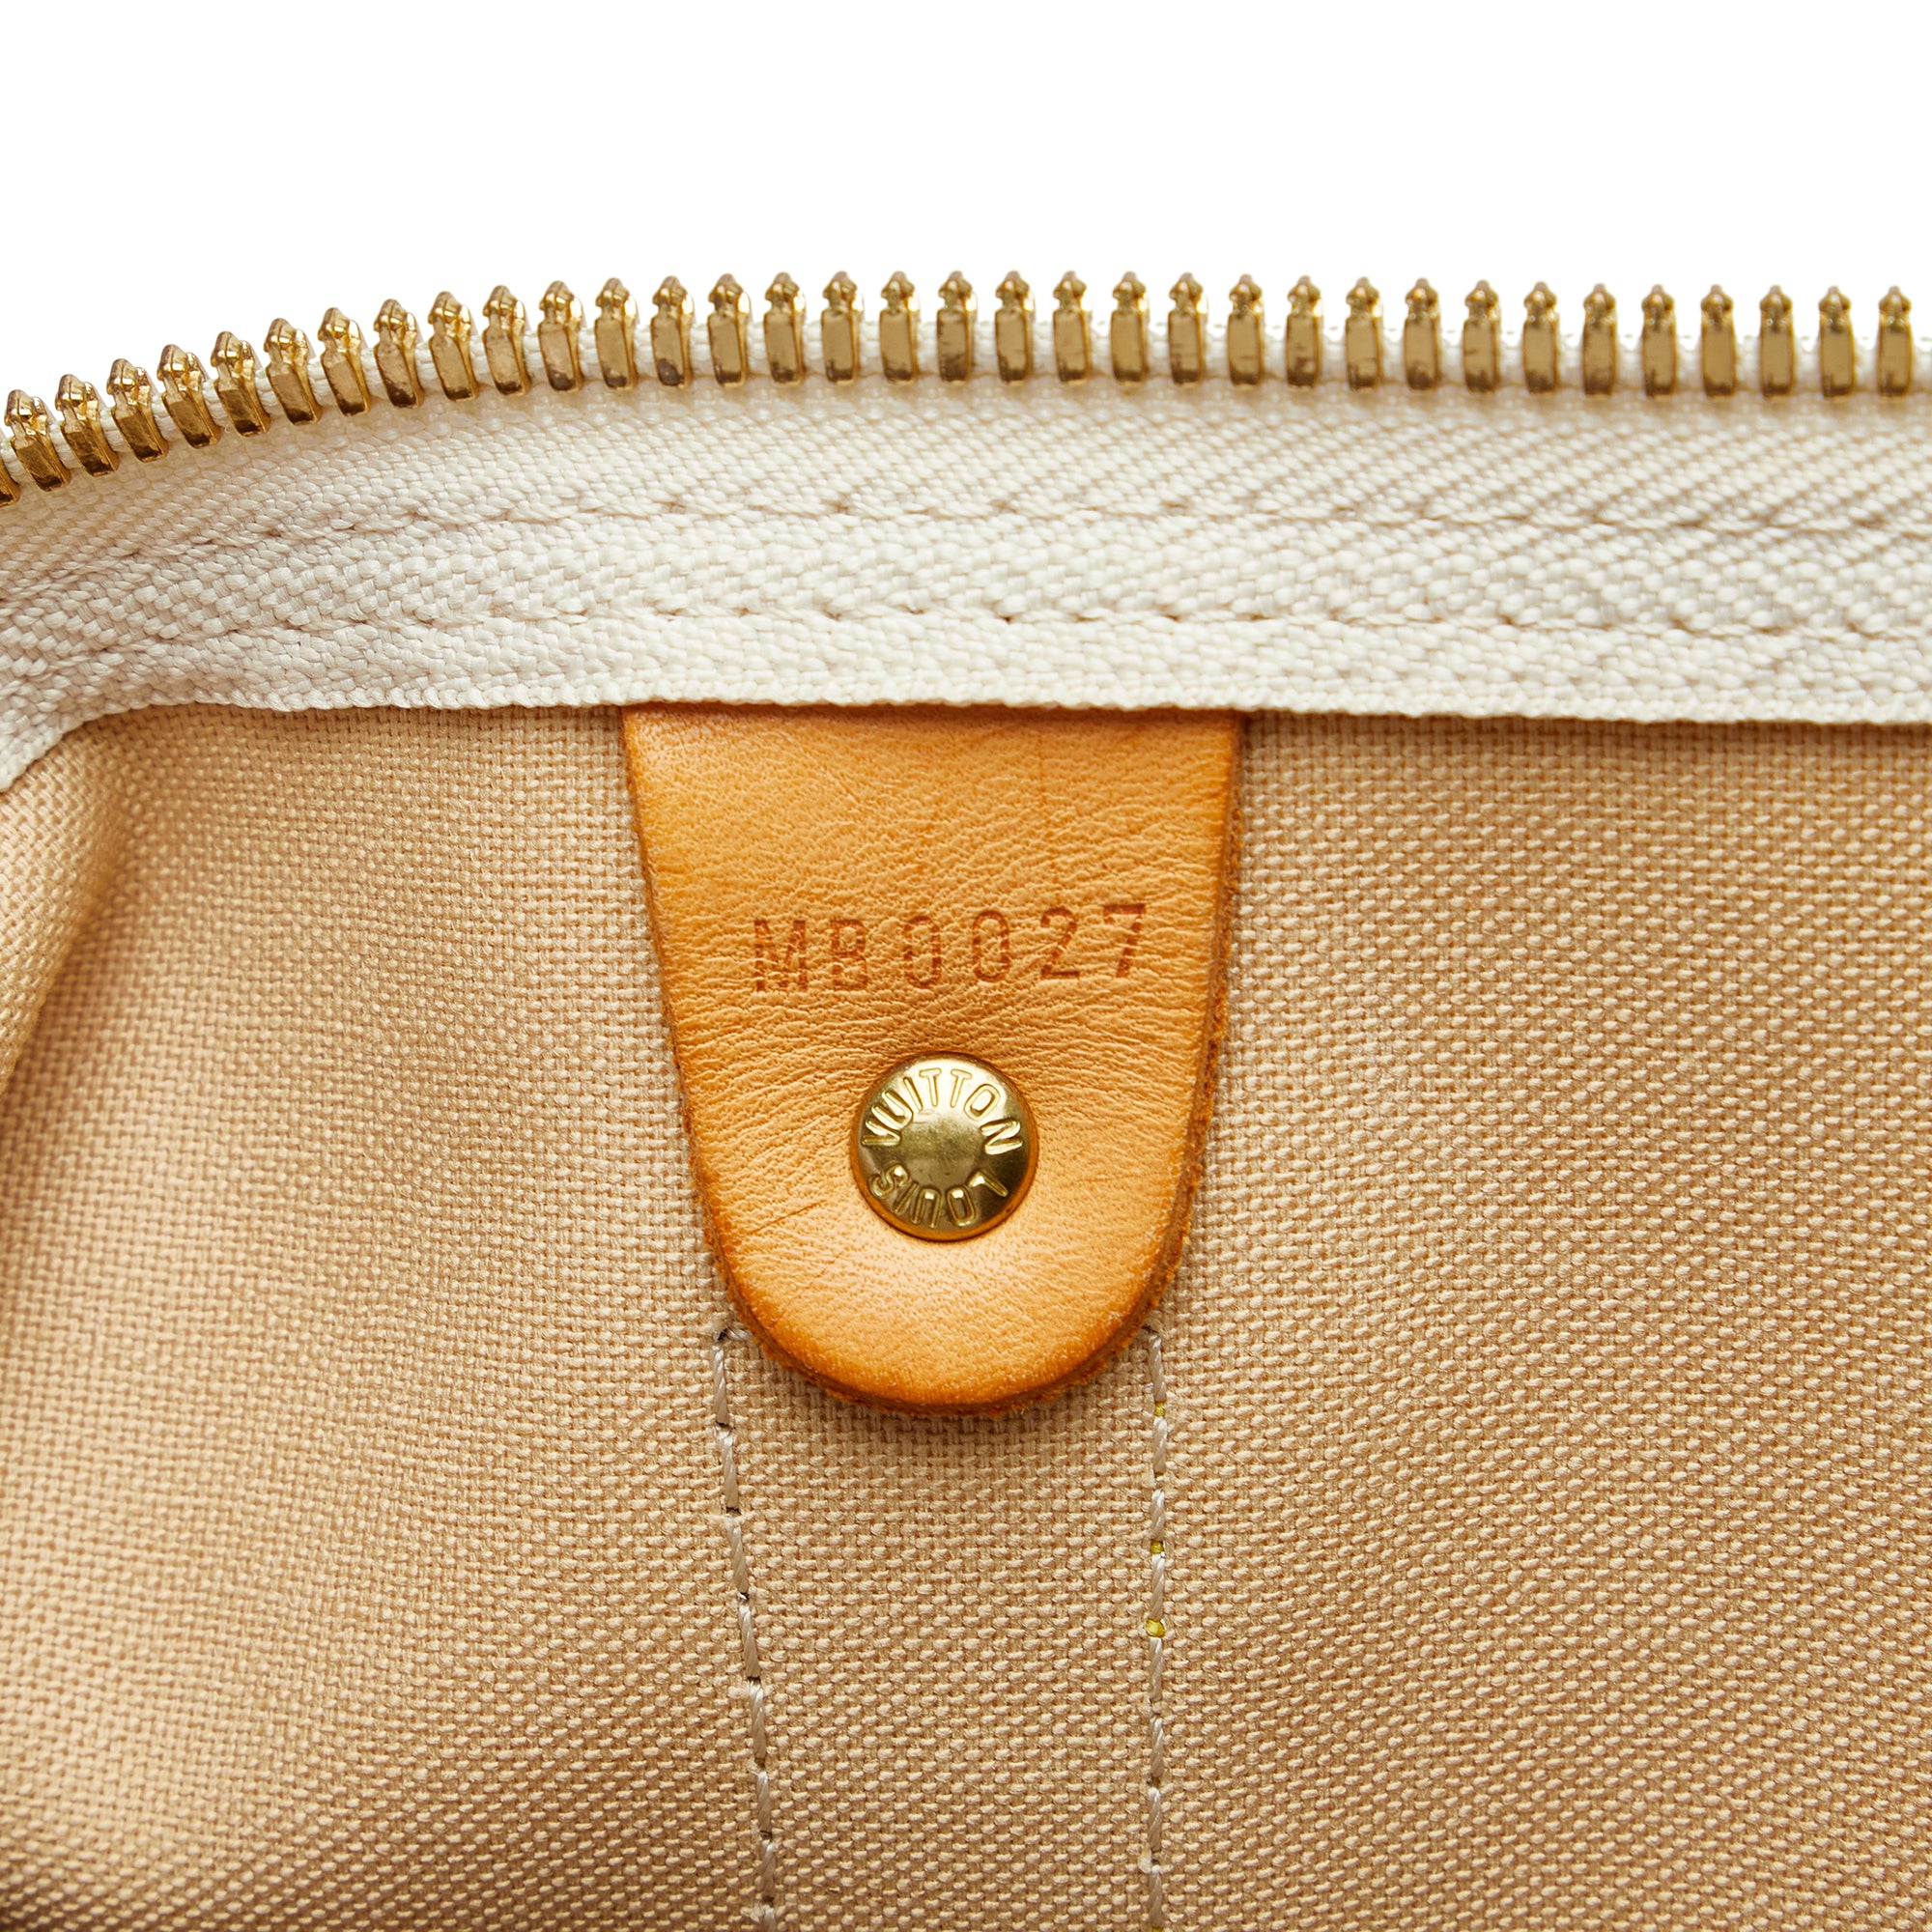 Louis Vuitton Damier Azur Keepall 50 Duffle Bag 38lk824s